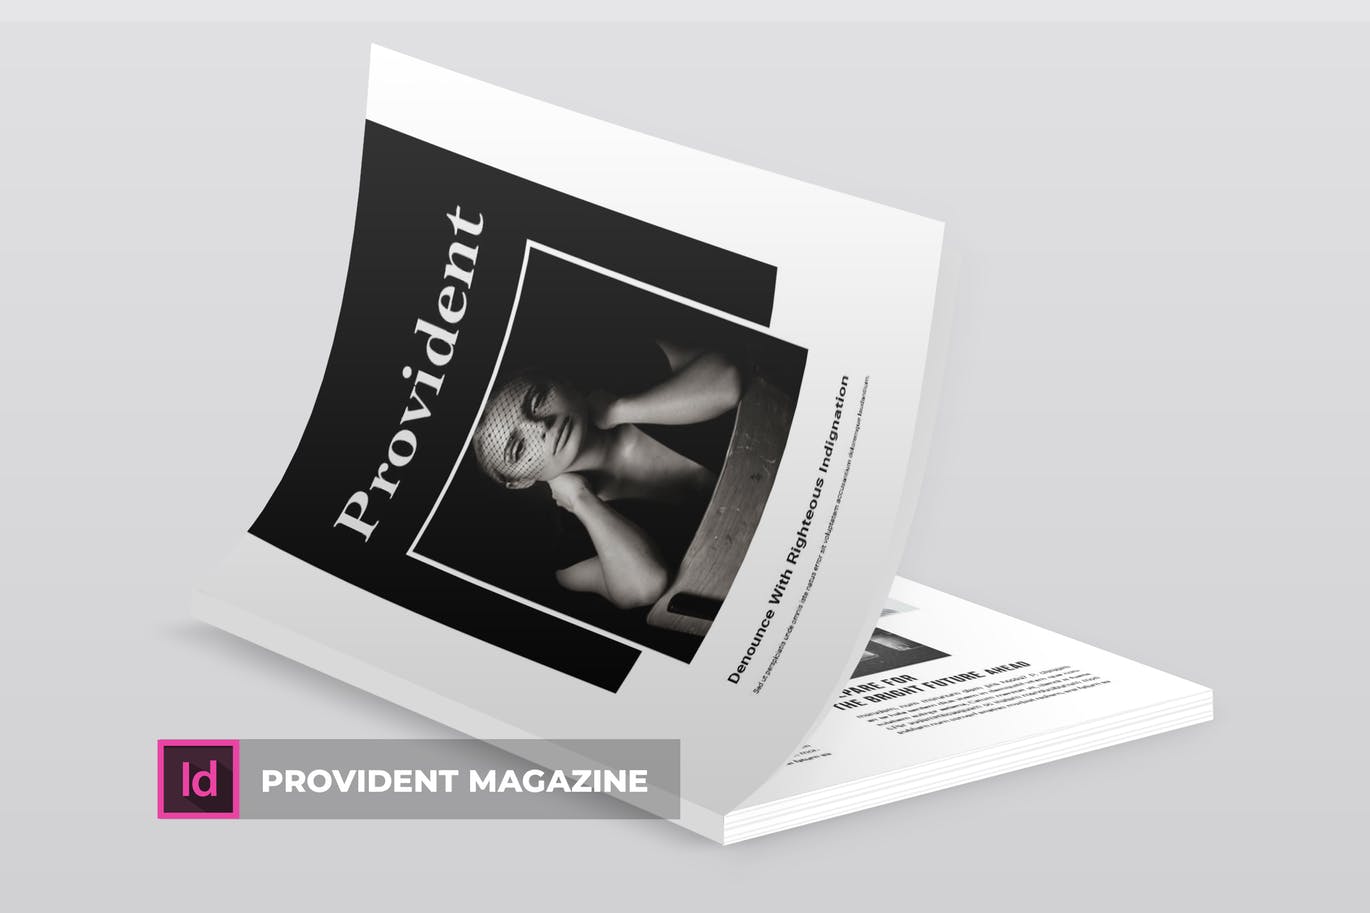 高端摄影主题A4非凡图库精选杂志版式设计INDD模板 Provident | Magazine Template插图